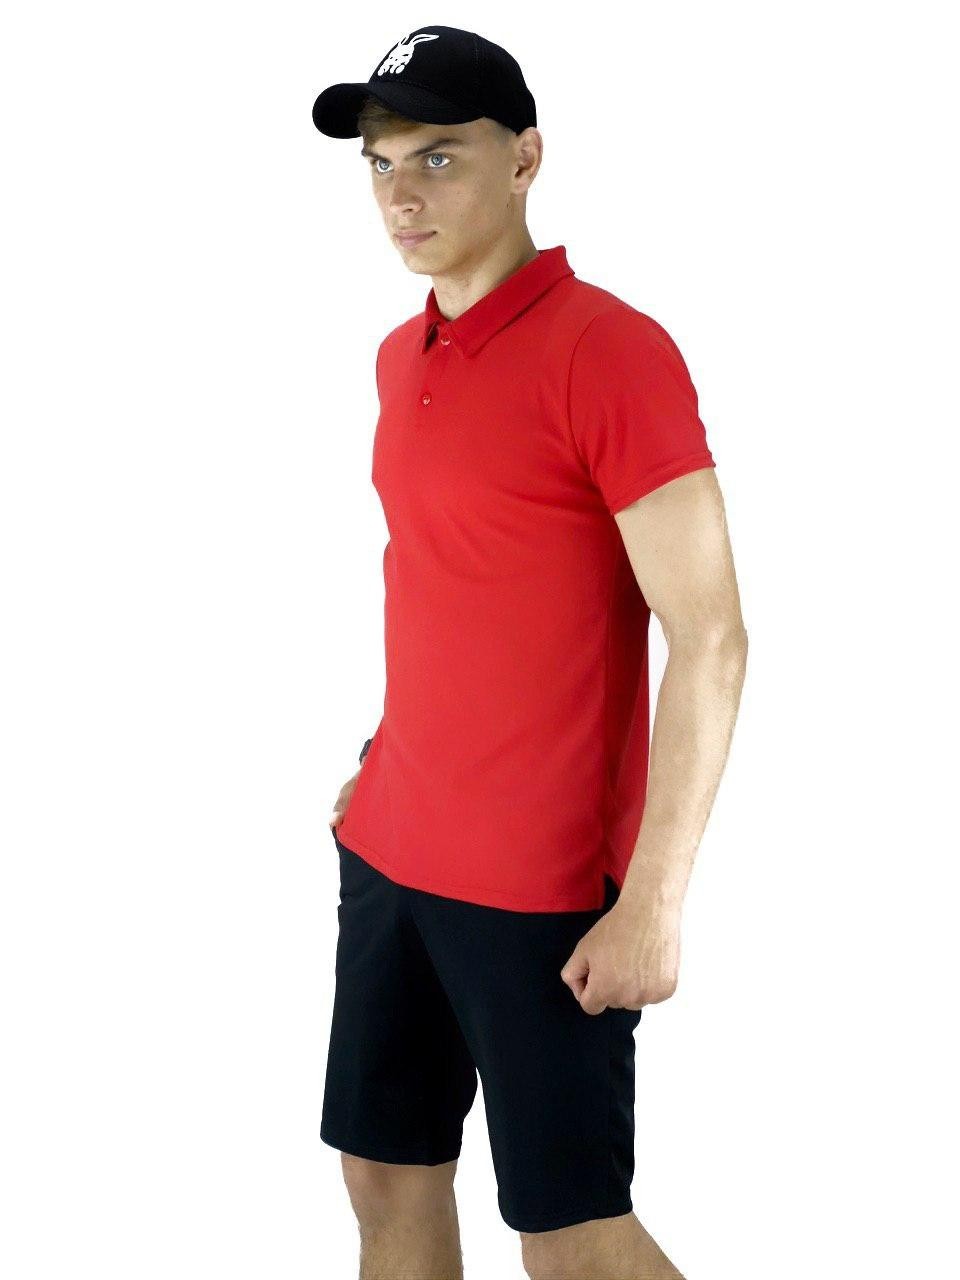 Костюм Intruder LaCosta річний (Чоловіча футболка поло та Чоловічі шорти трикотажні, Кепка) червоно-чорний Intruder